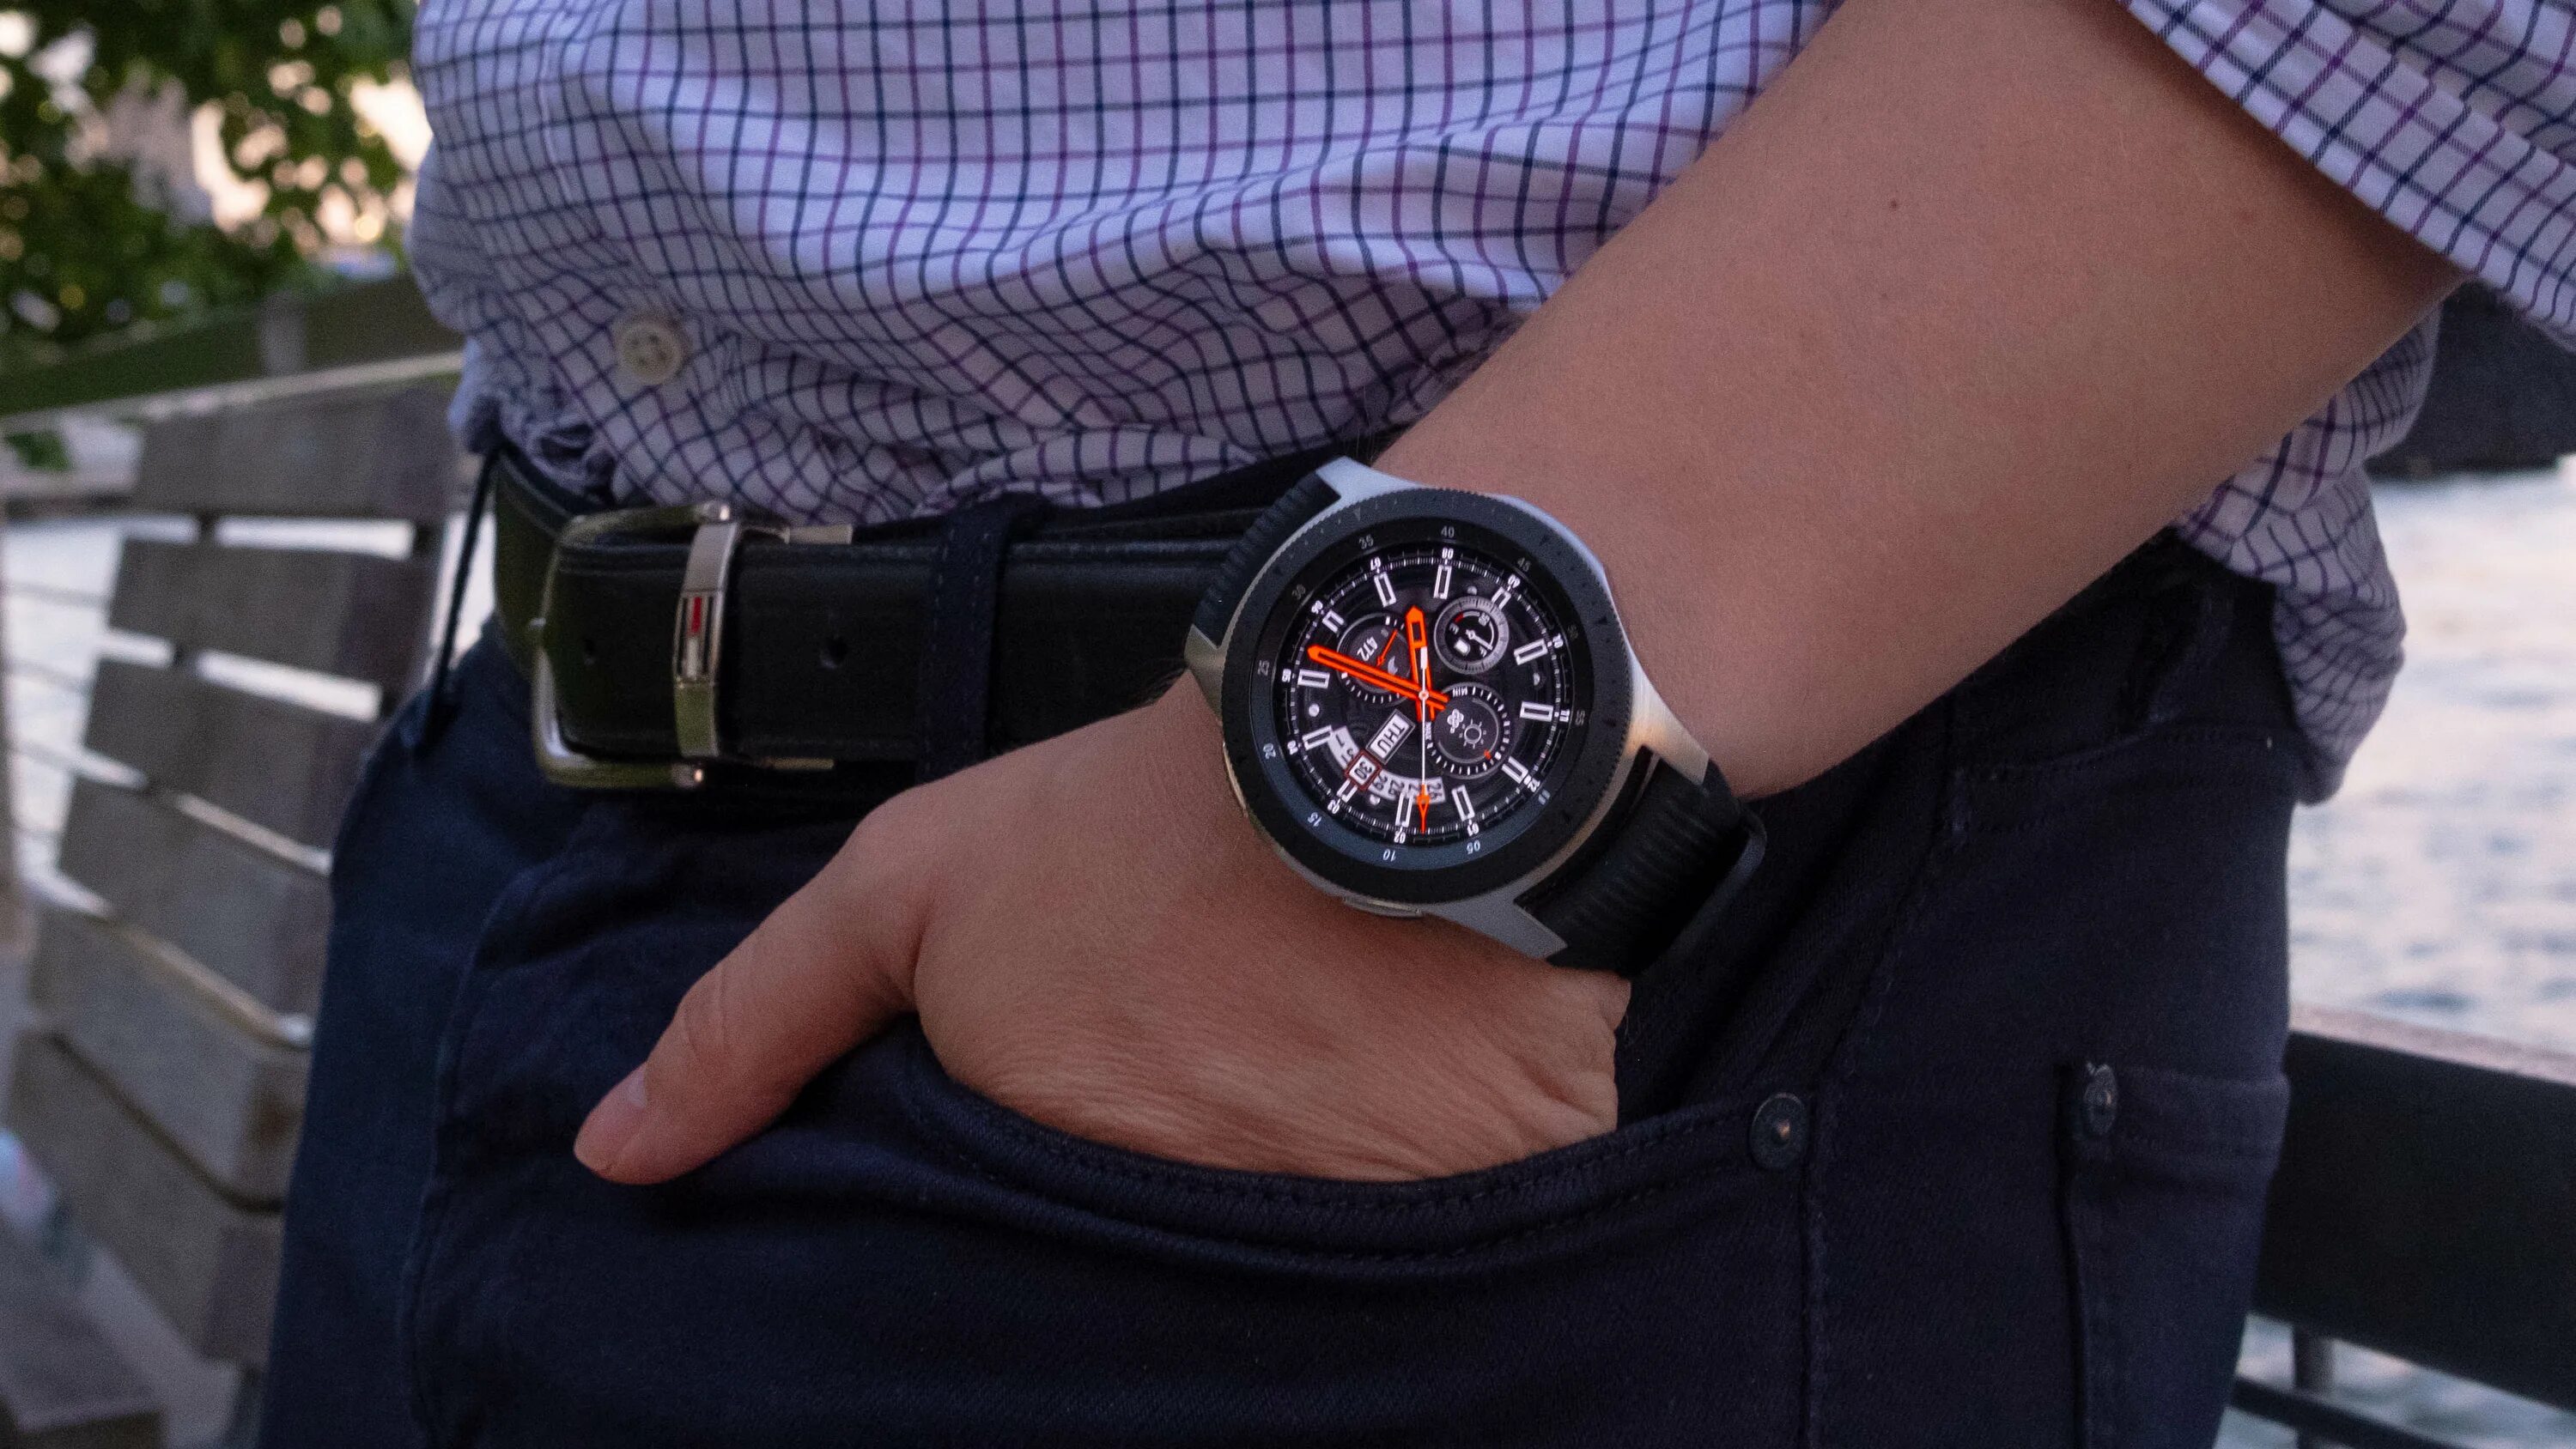 Samsung Galaxy watch 46mm. Samsung Galaxy watch 46мм. Самсунг галакси watch 46 мм. Samsung Galaxy watch SM-r800.